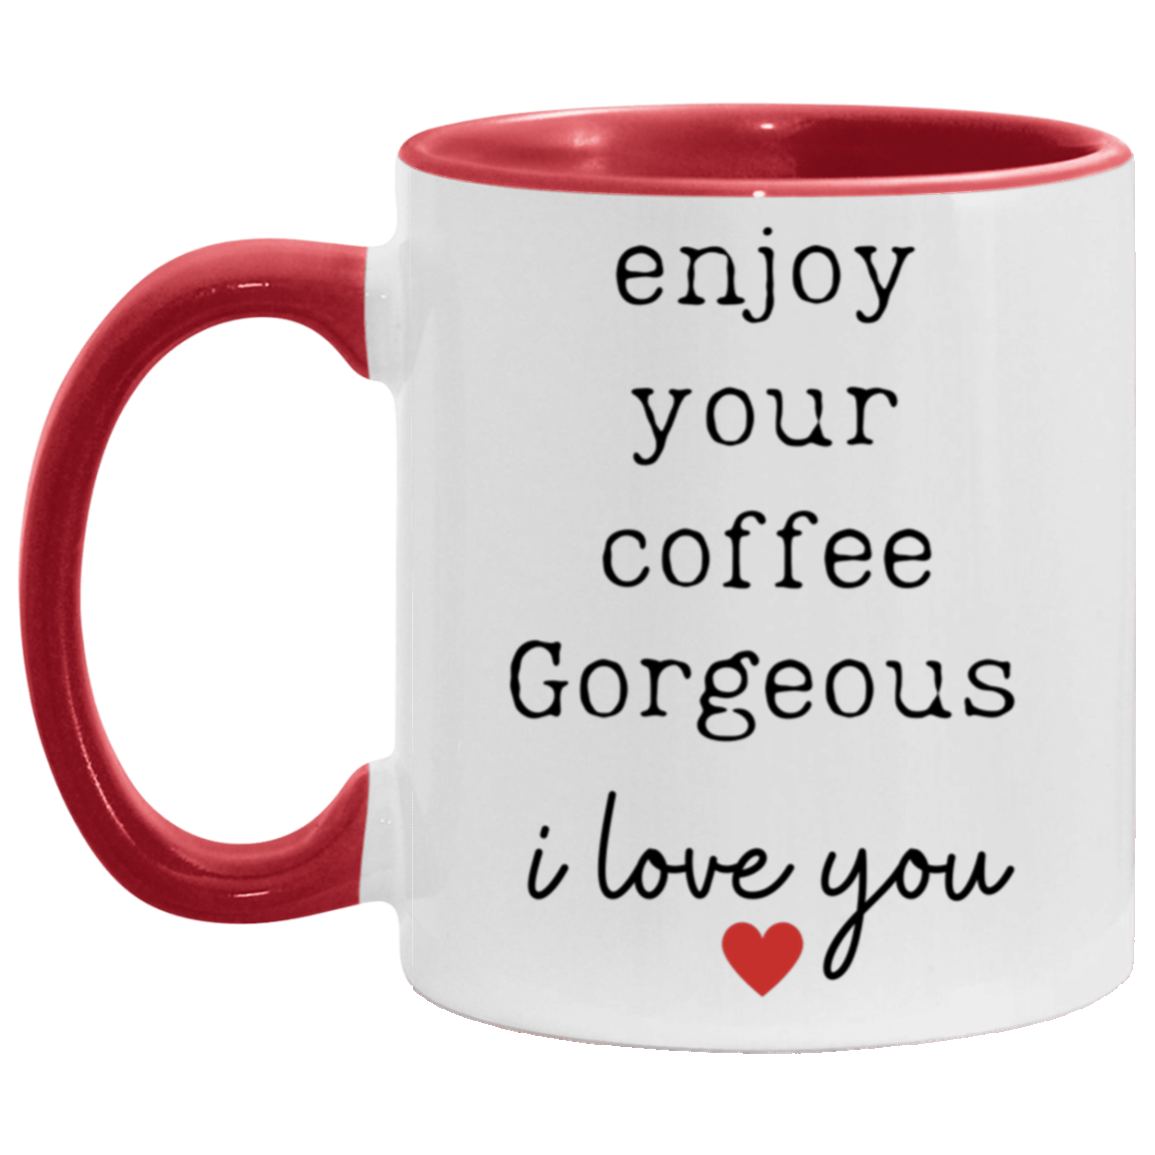 " Enjoy Your Coffee Gorgeous" Two-Toned, 11oz mug.